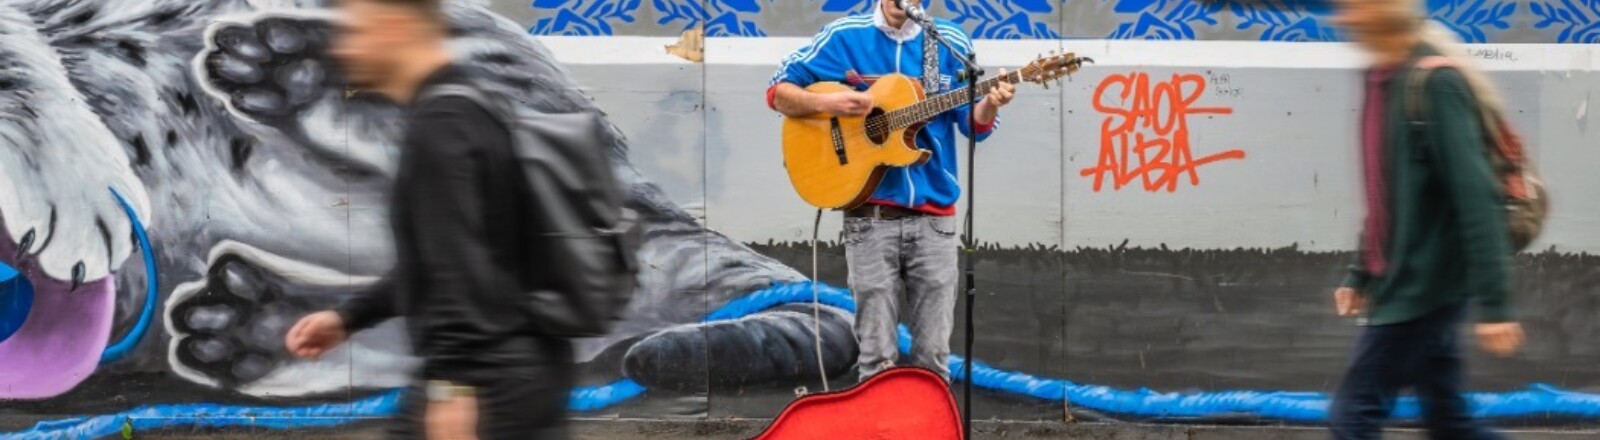 Ein Straßenmusiker mit Gitarre singt, während Menschen vorbeigehen.